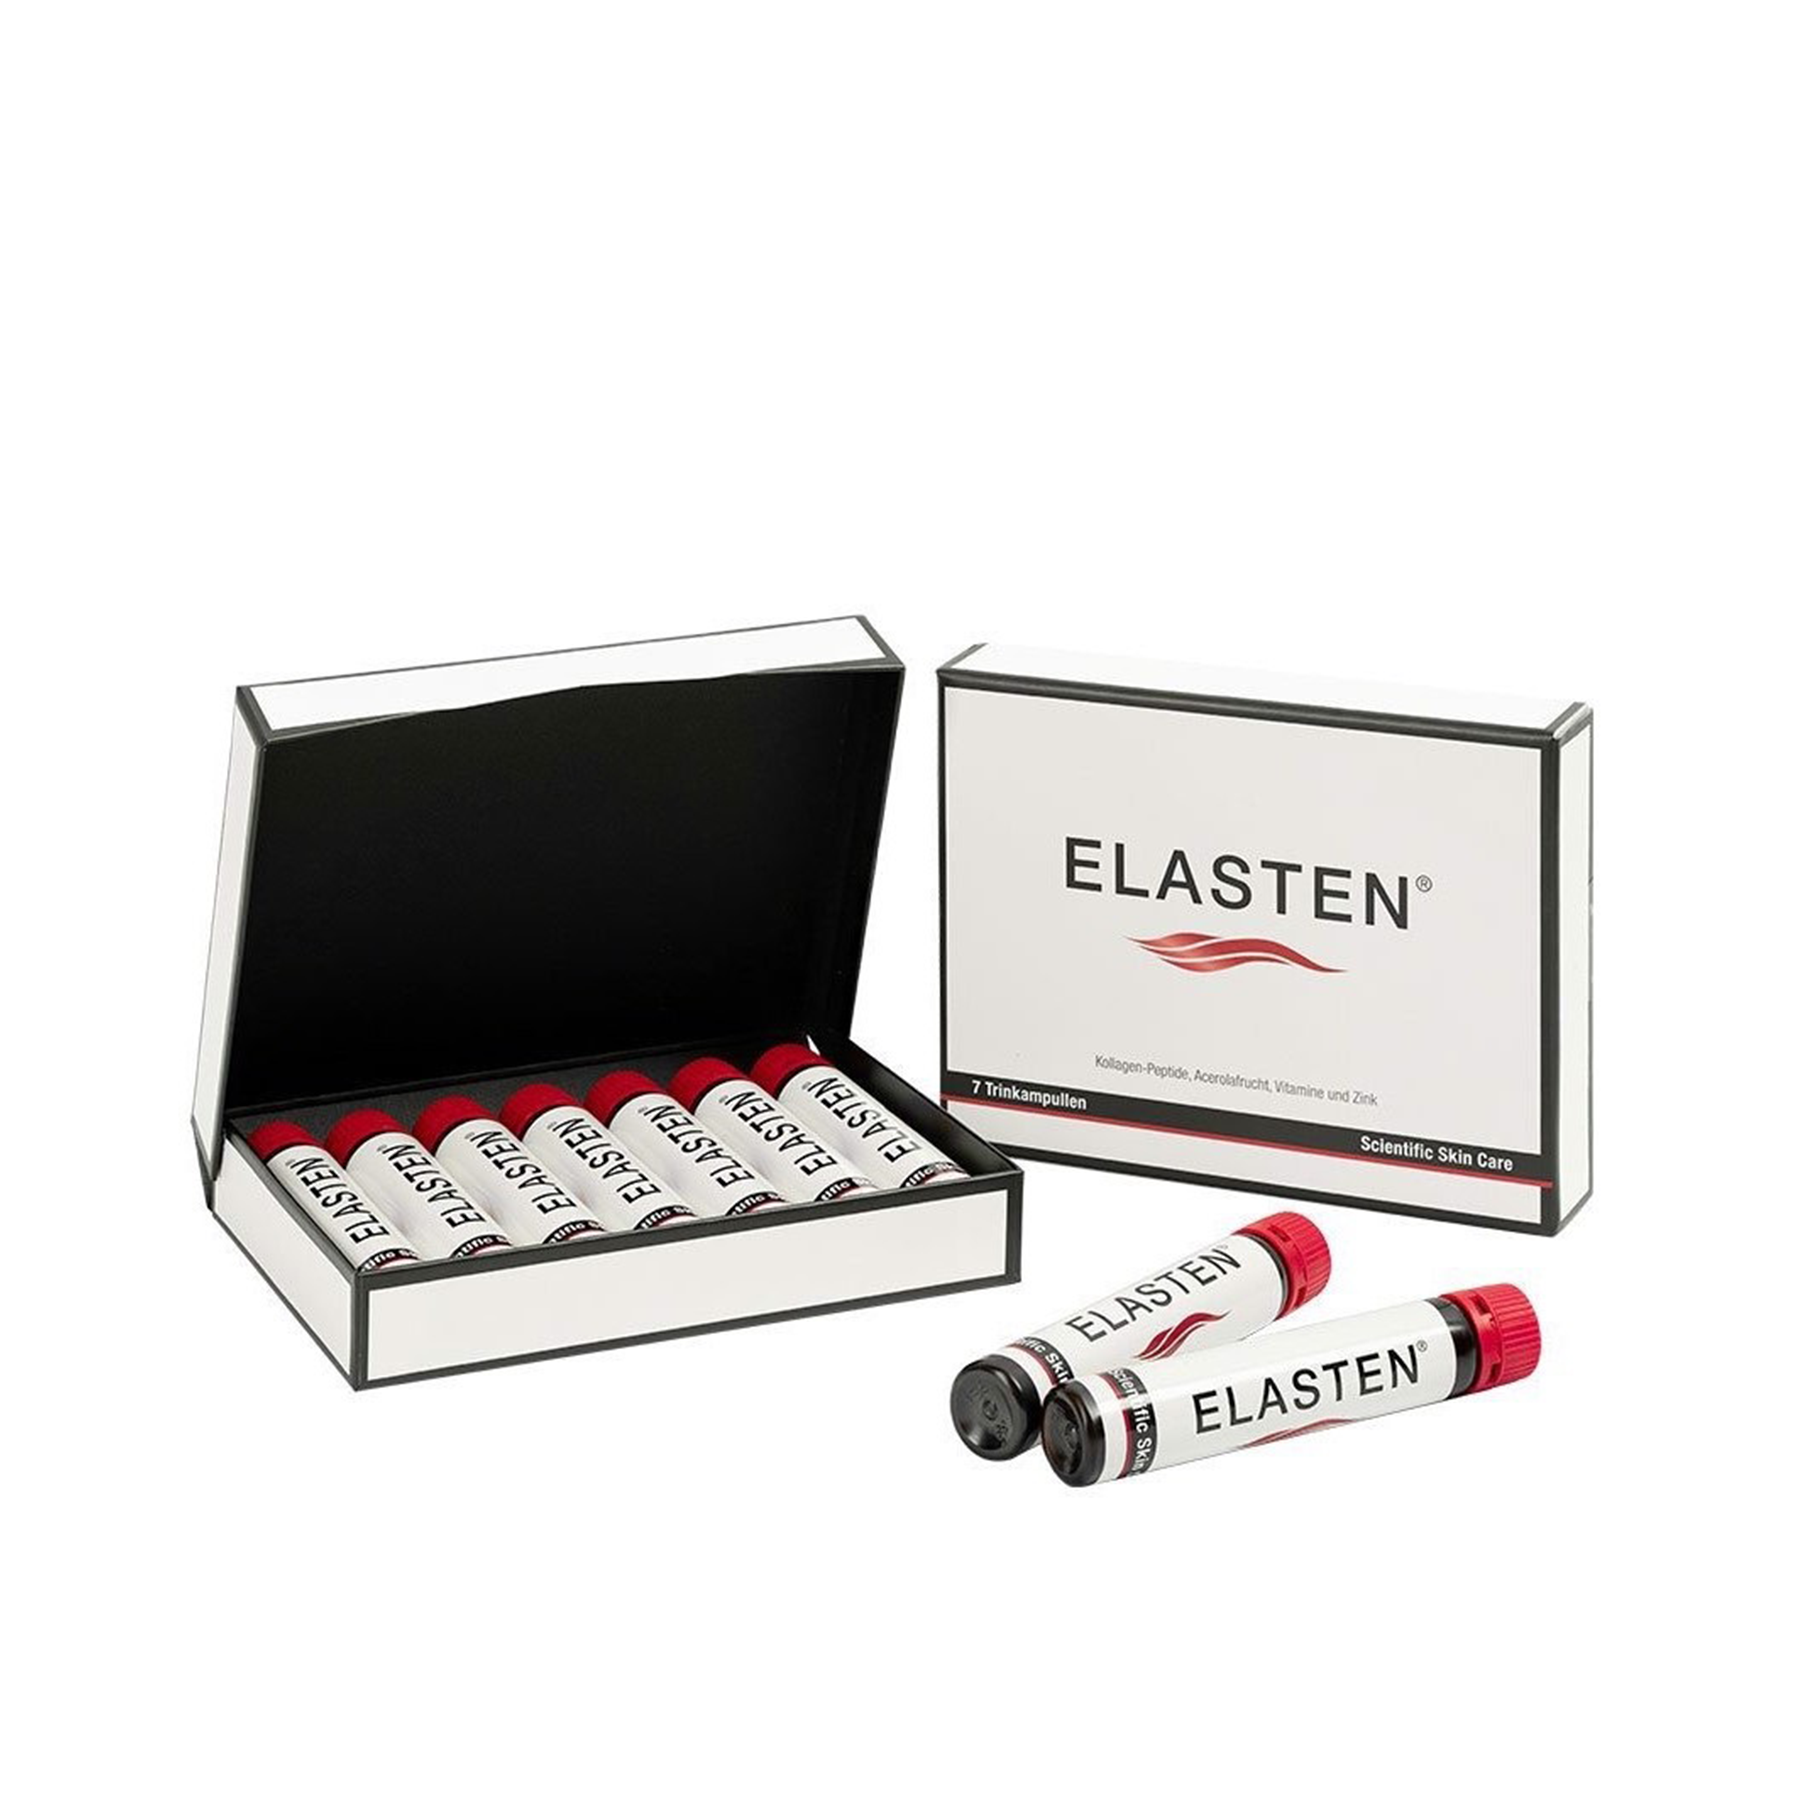 Elasten - Collagen Drink Box of 7